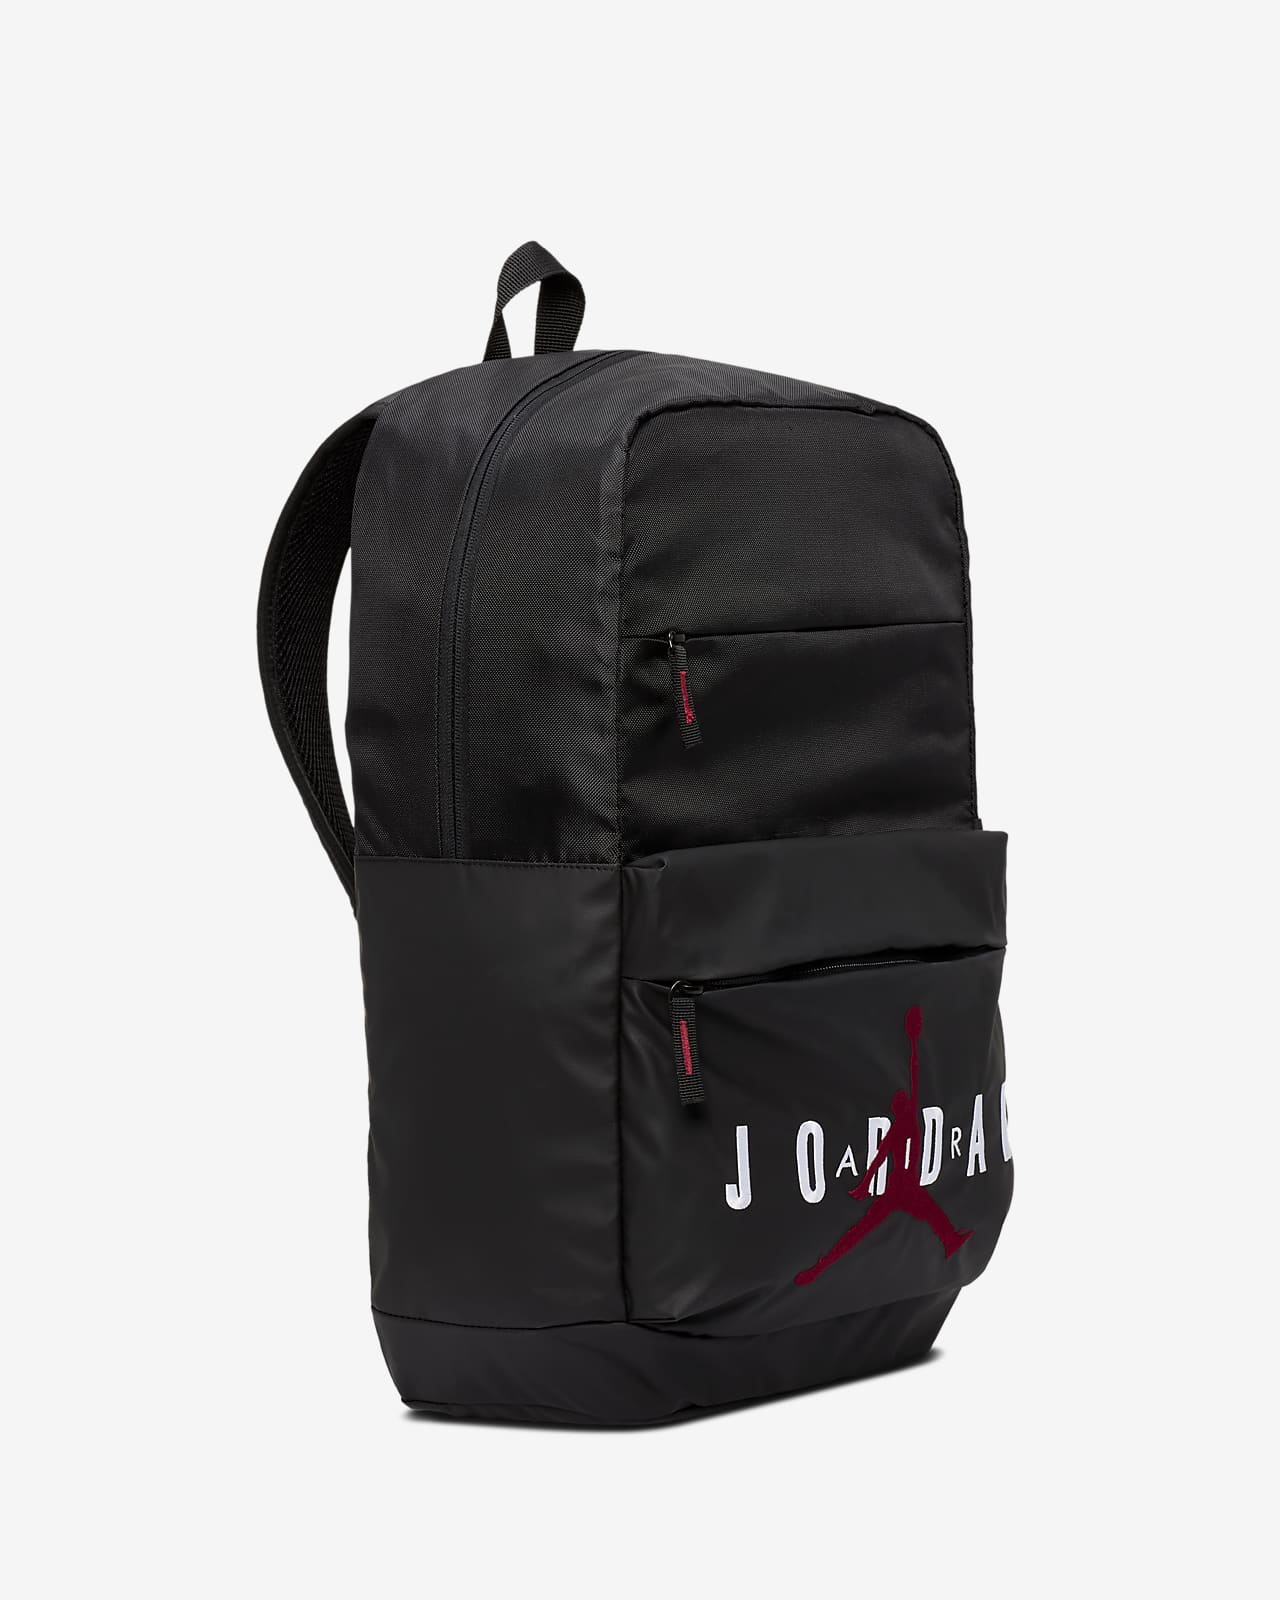 air jordan backpack canada